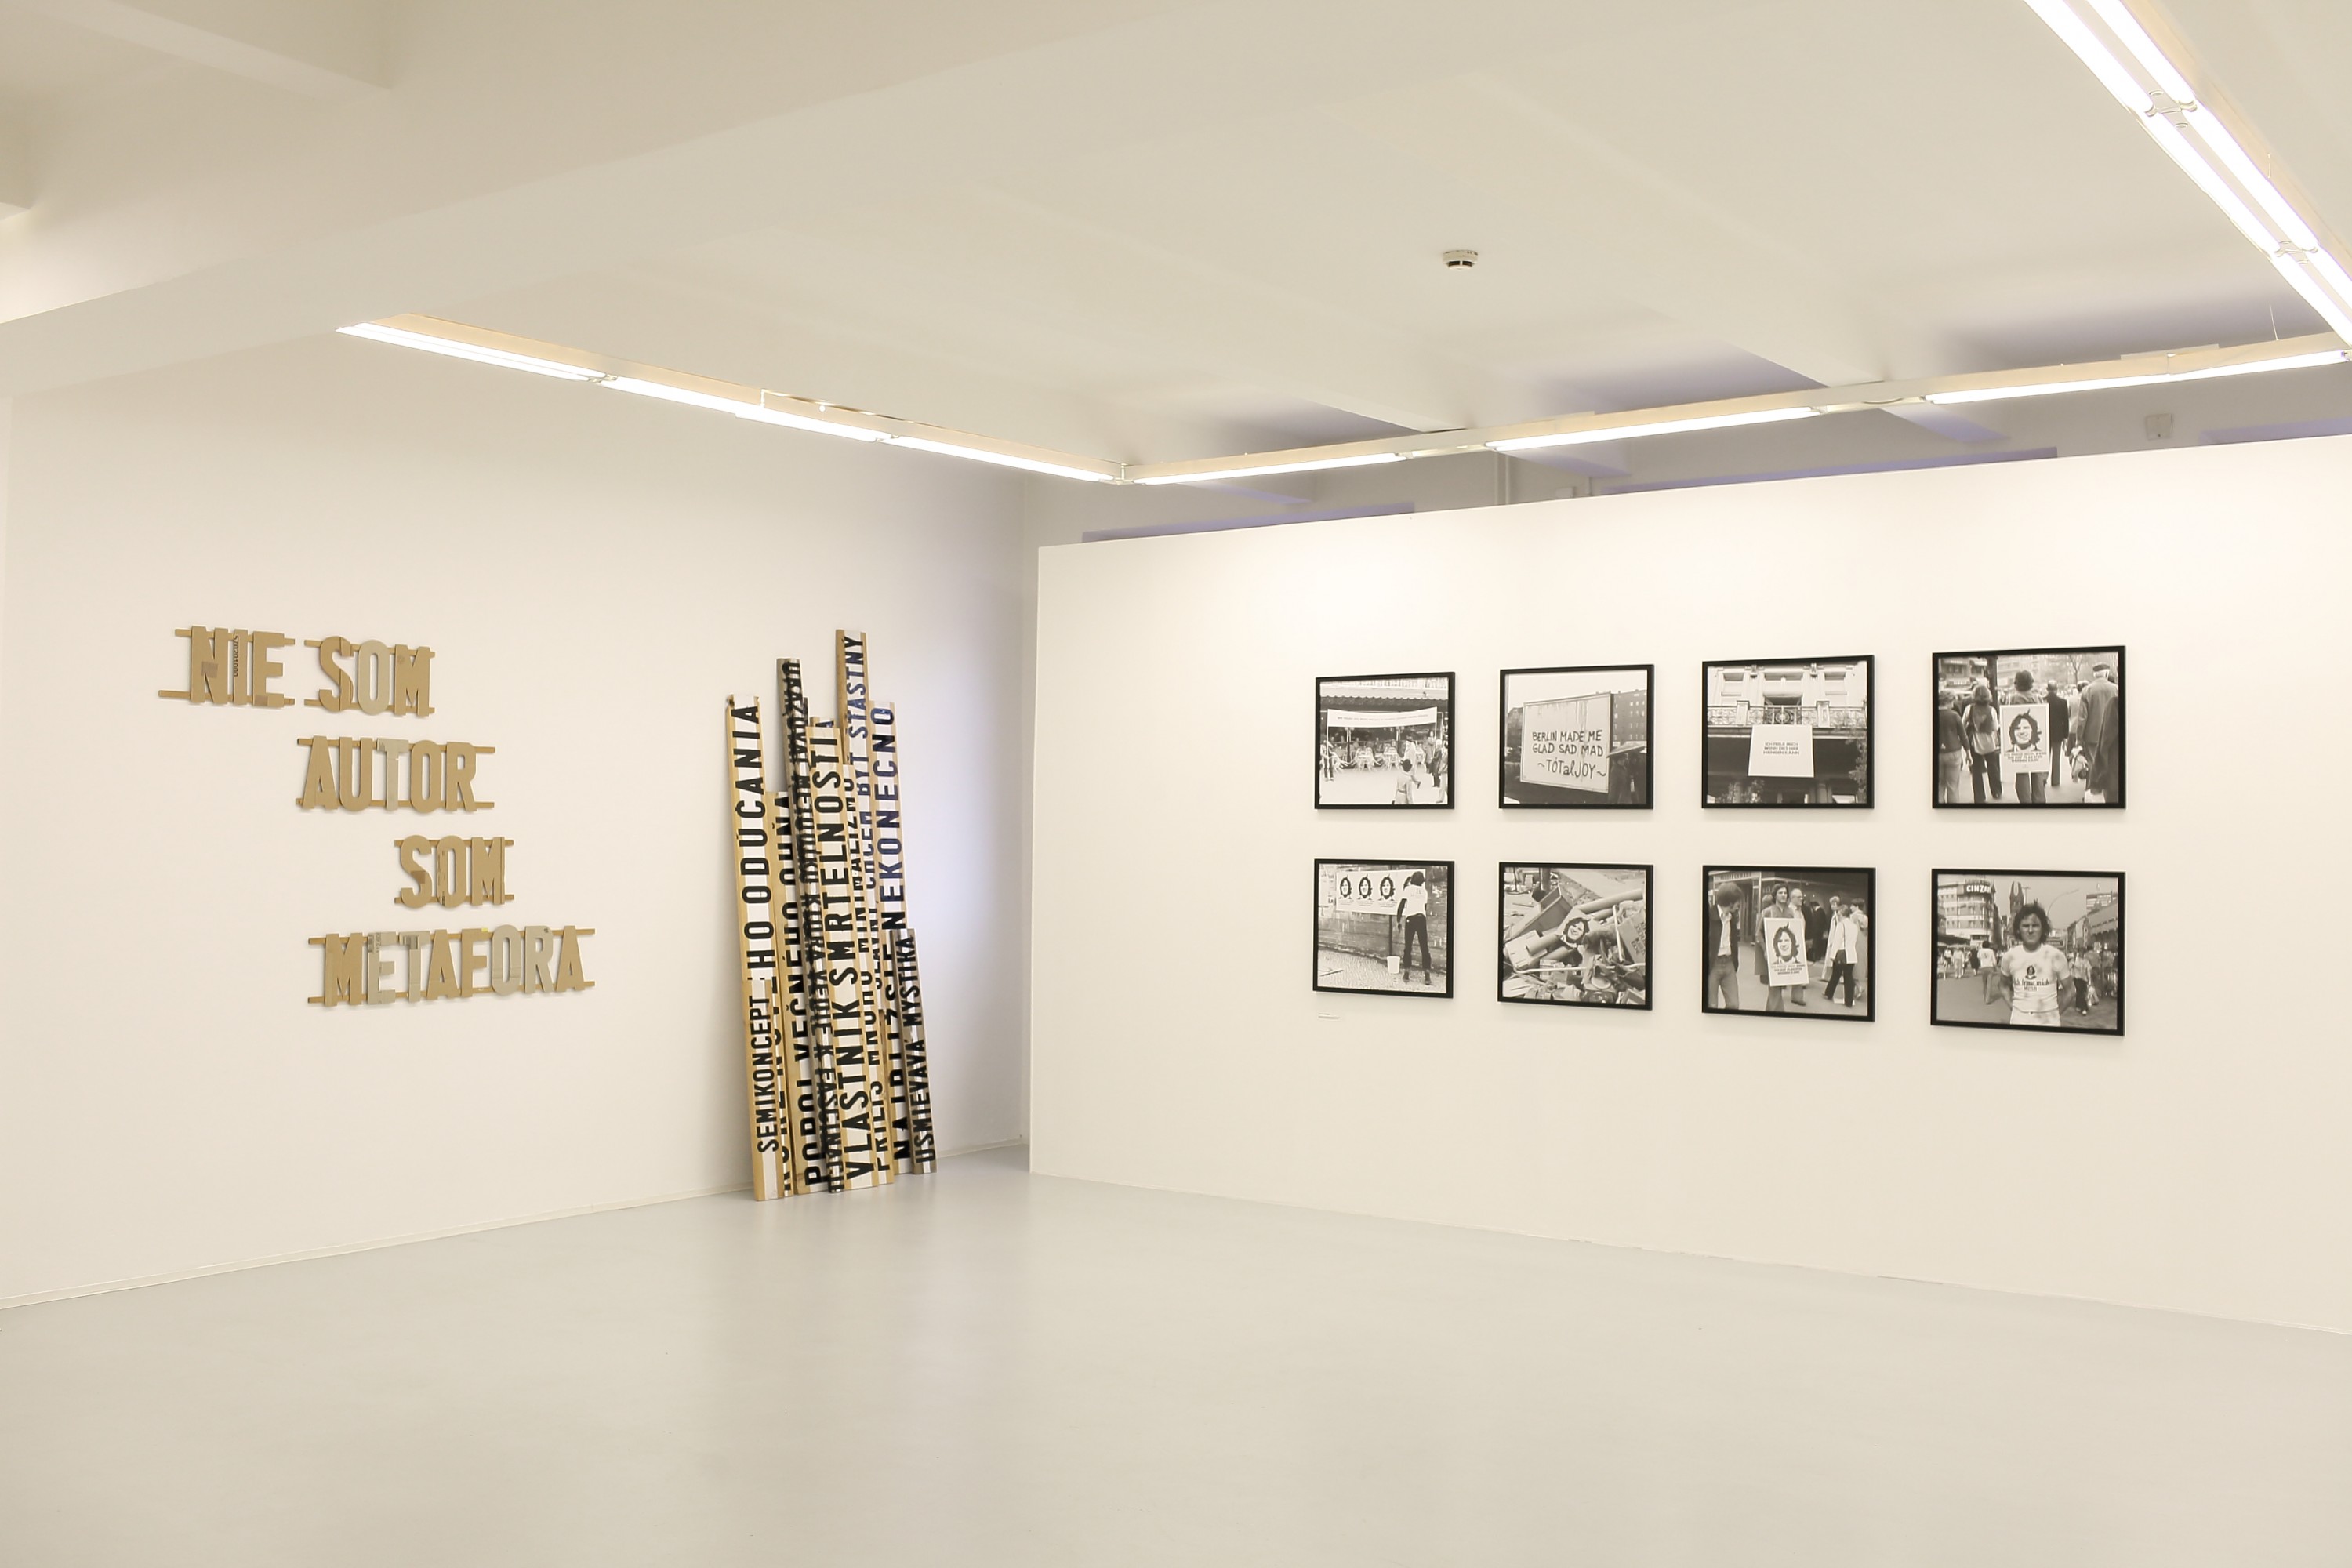 Sala wystawiennicza z wyeksponowanymi na ścianach pracami fotograficznymi oraz instalacją artystyczną.